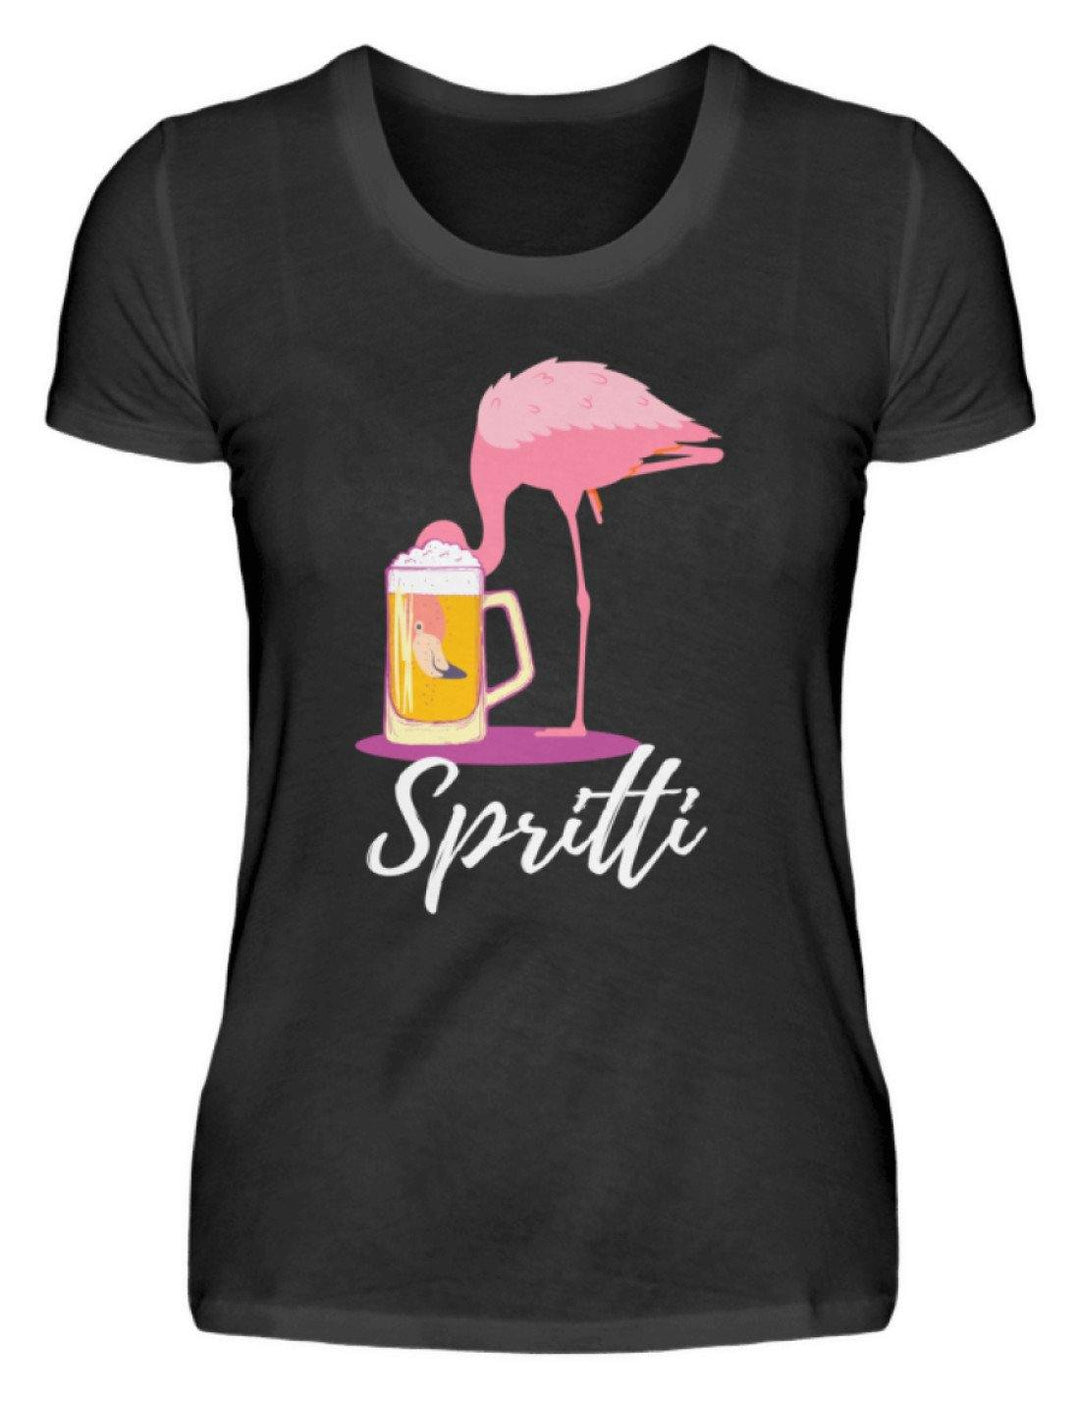 Flamingo Spritti - Words on Shirt  - Damenshirt - Words on Shirts Sag es mit dem Mittelfinger Shirts Hoodies Sweatshirt Taschen Gymsack Spruch Sprüche Statement